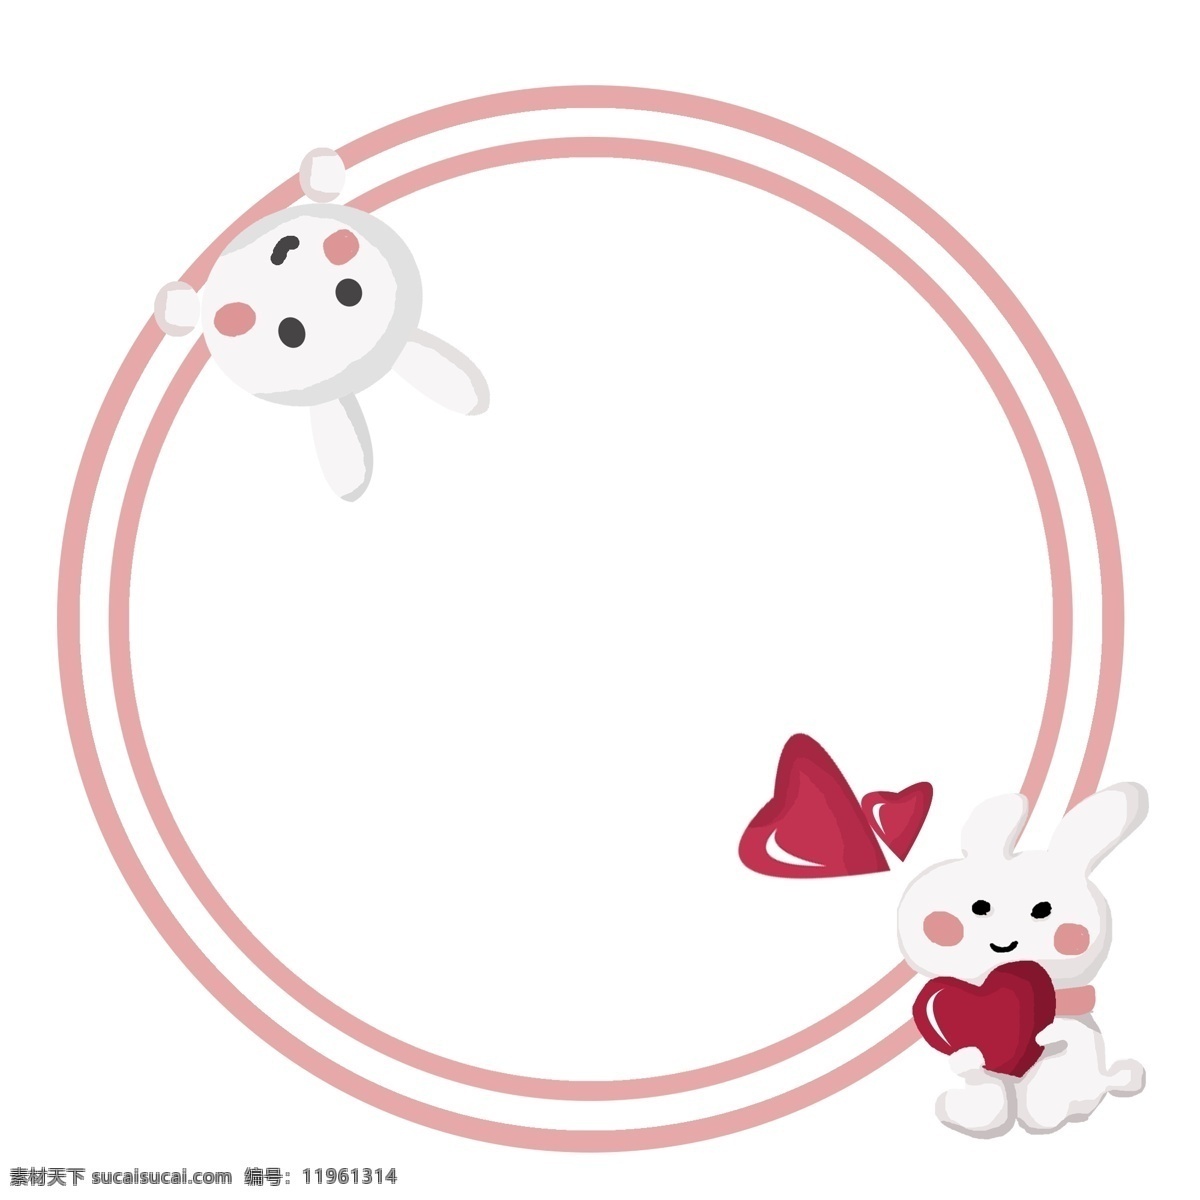 手绘 爱情 兔子 边框 粉色的边框 可爱的兔子 卡通边框 漂亮的边框 手绘爱情边框 圆形的边框